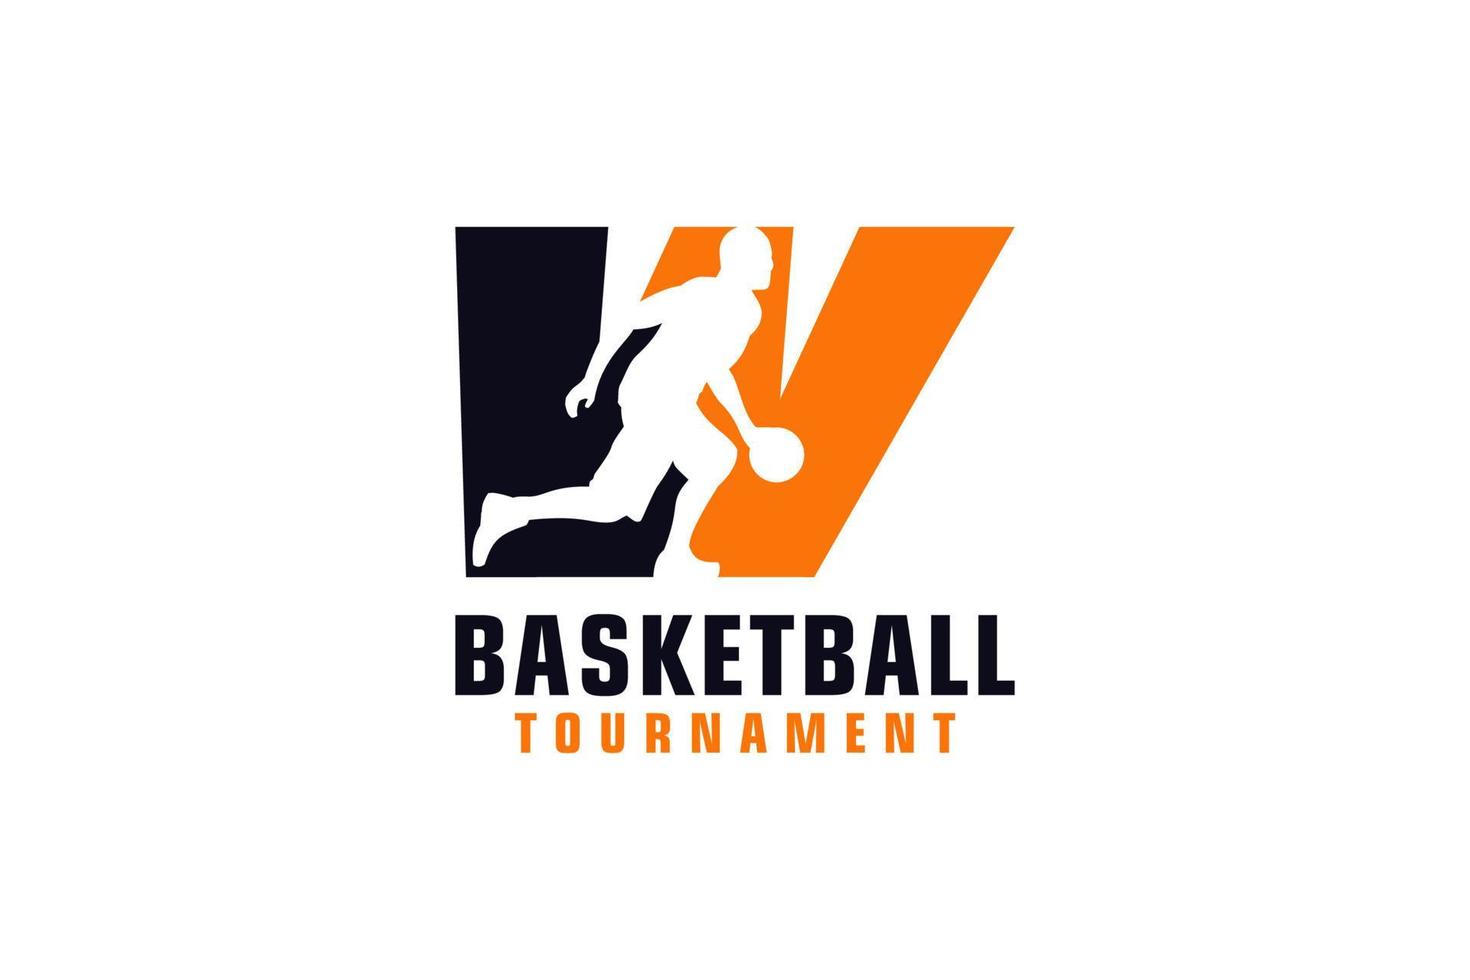 Buchstabe w mit Basketball-Logo-Design. Vektordesign-Vorlagenelemente für Sportteams oder Corporate Identity. vektor